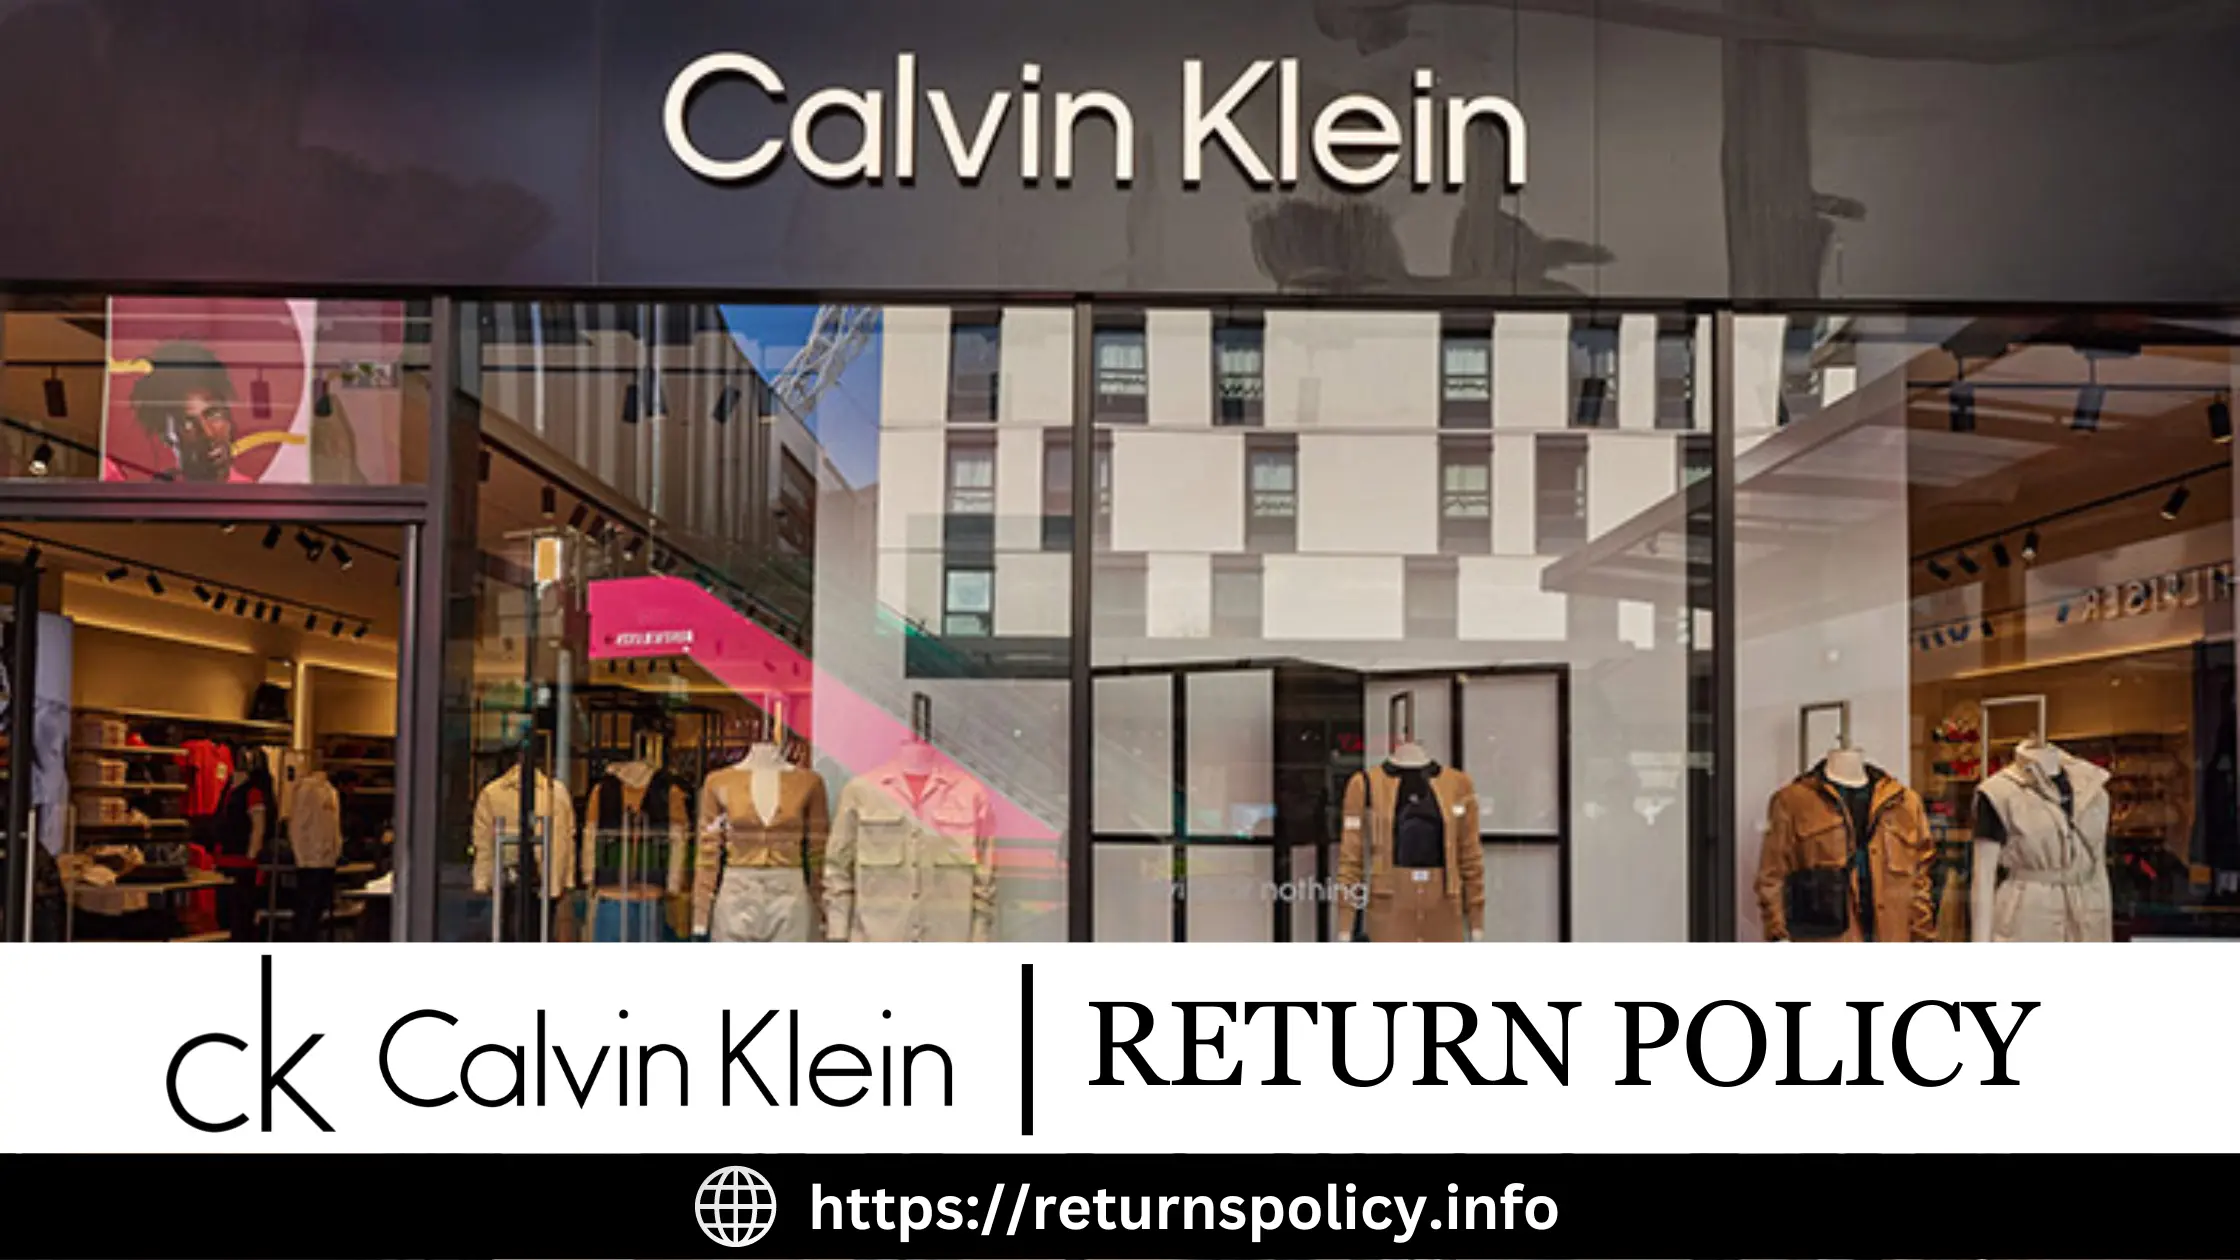 Calvin Klein Return Policy